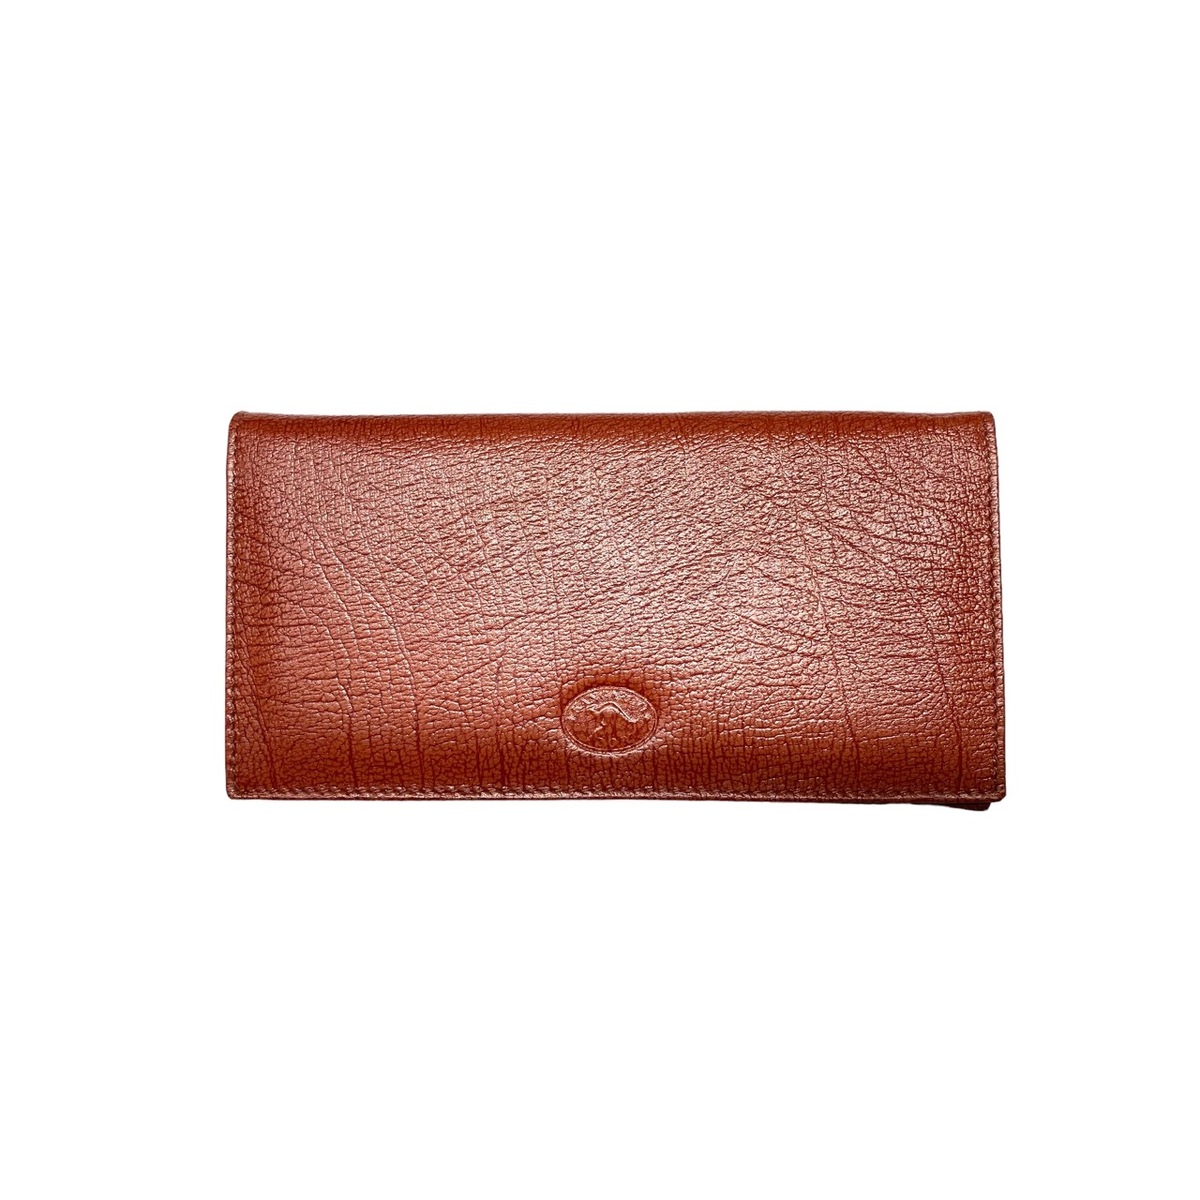 Mens Wallet RFID Kangaroo Leather - 1441 - Skinnys Australia